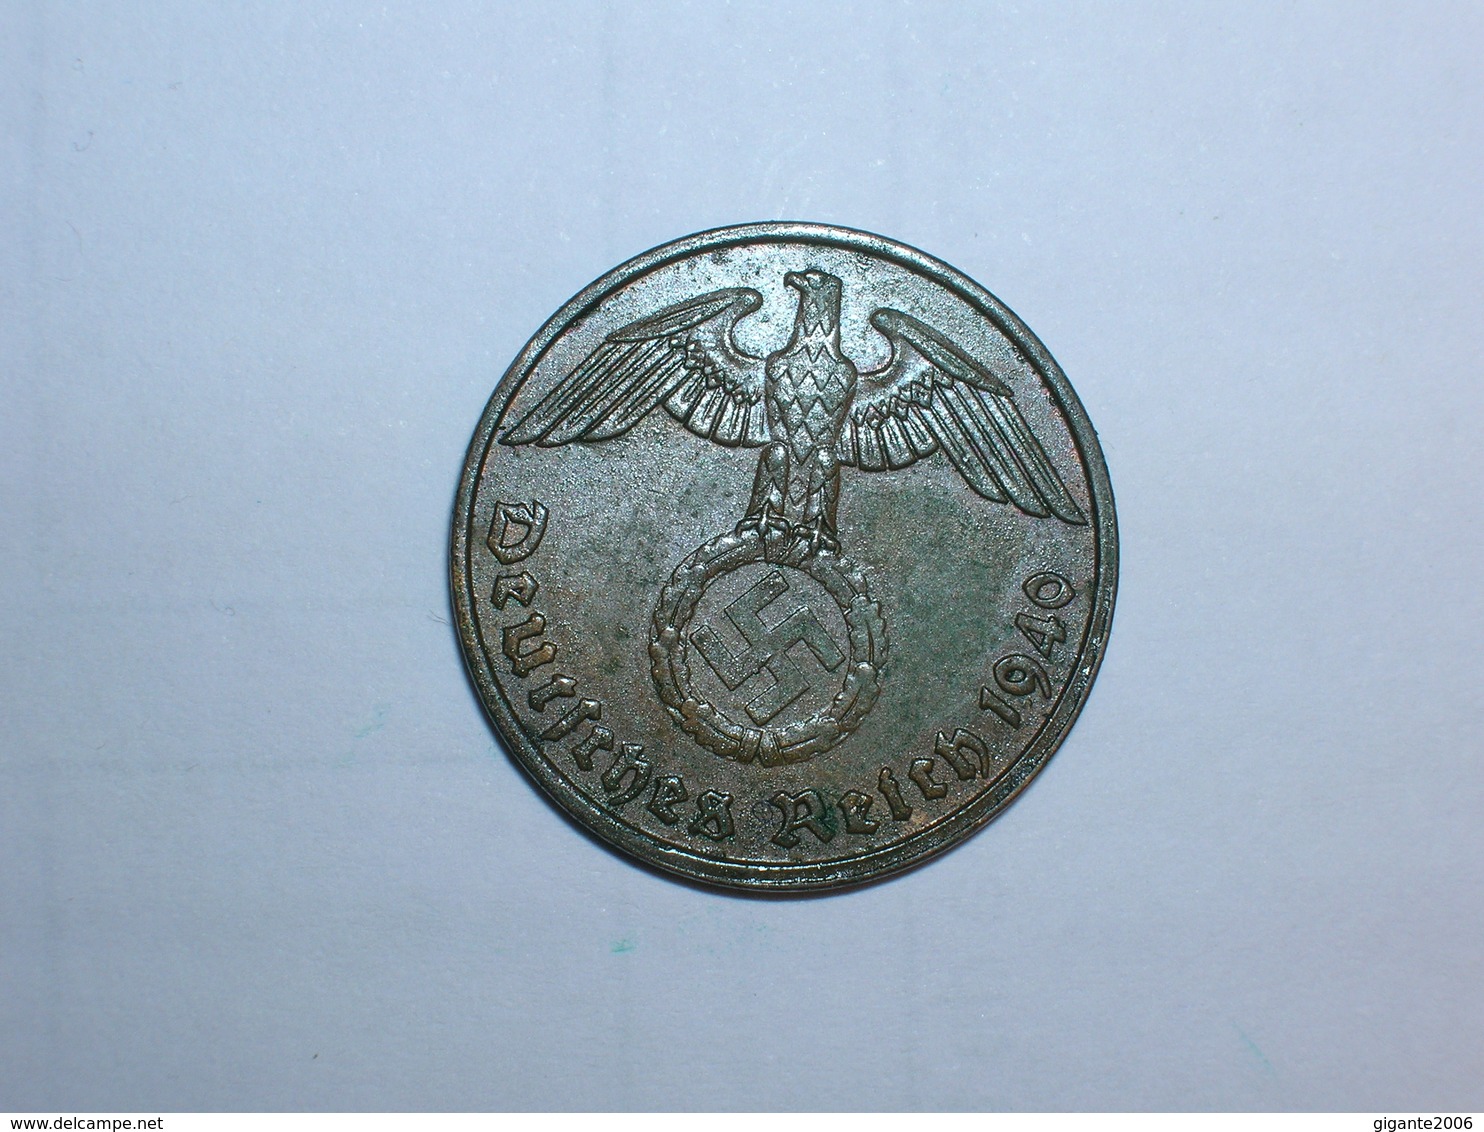 ALEMANIA- 2 PFENNIG 1940 E (956) - 2 Reichspfennig